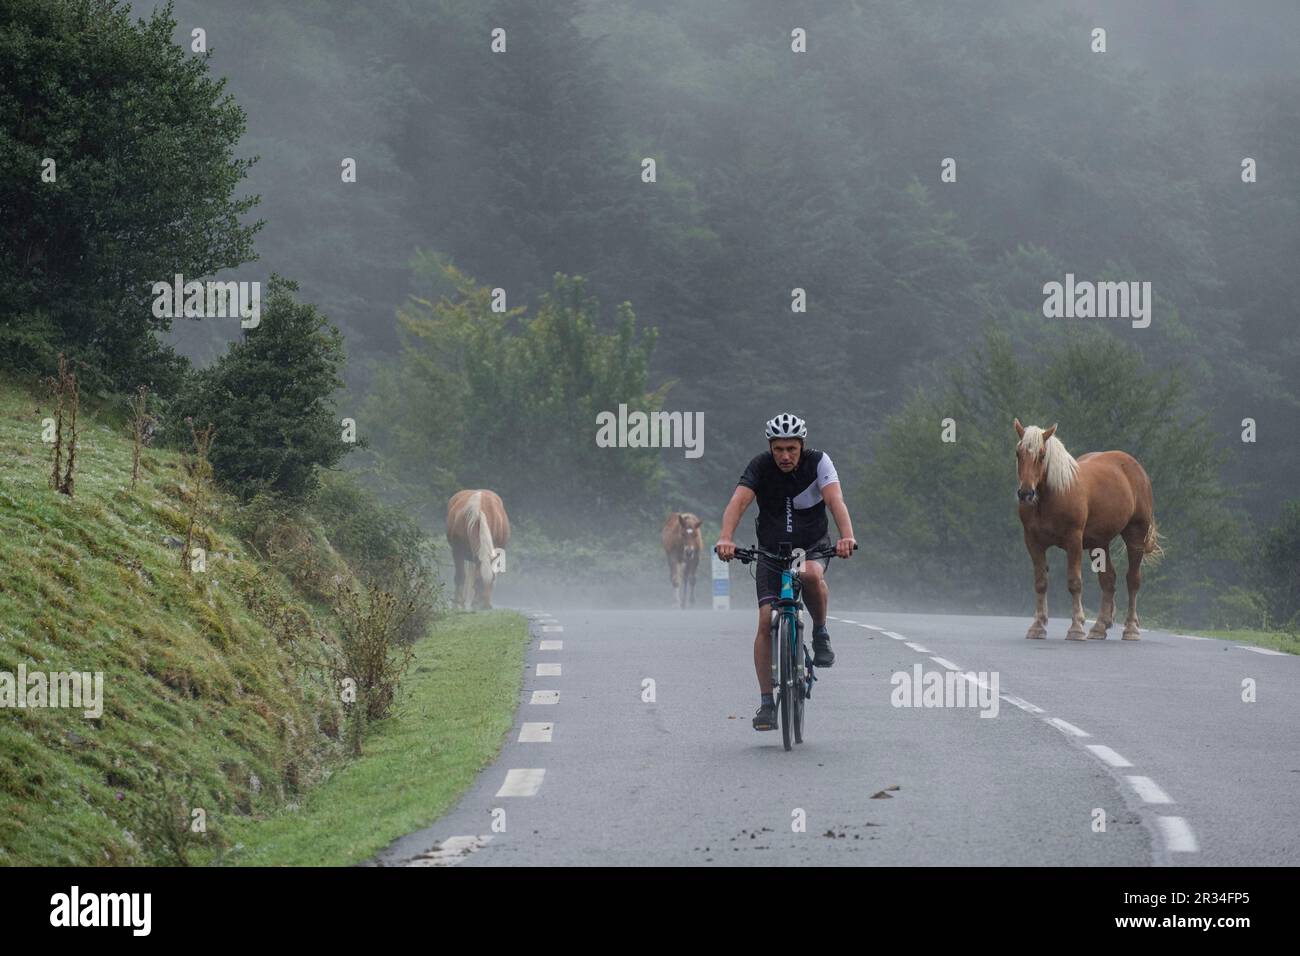 ciclista entre un rebaño de caballos, carretera Isaba-Francia, valle de Belagua, Isaba, Navarra, Spain, Europe. Stock Photo